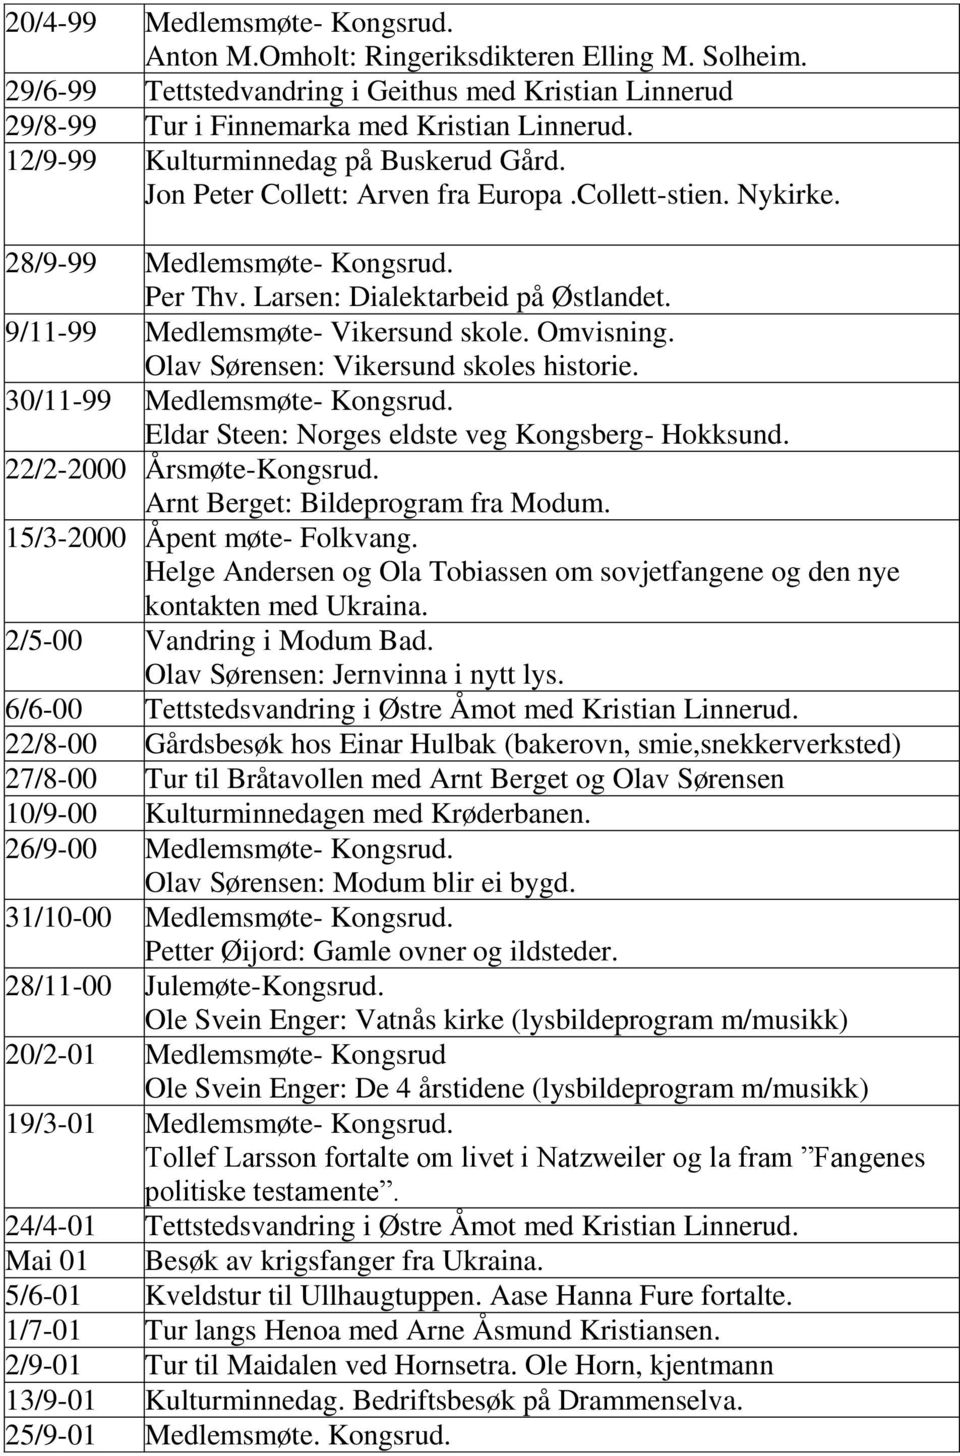 9/11-99 Medlemsmøte- Vikersund skole. Omvisning. Olav Sørensen: Vikersund skoles historie. 30/11-99 Medlemsmøte- Kongsrud. Eldar Steen: Norges eldste veg Kongsberg- Hokksund.